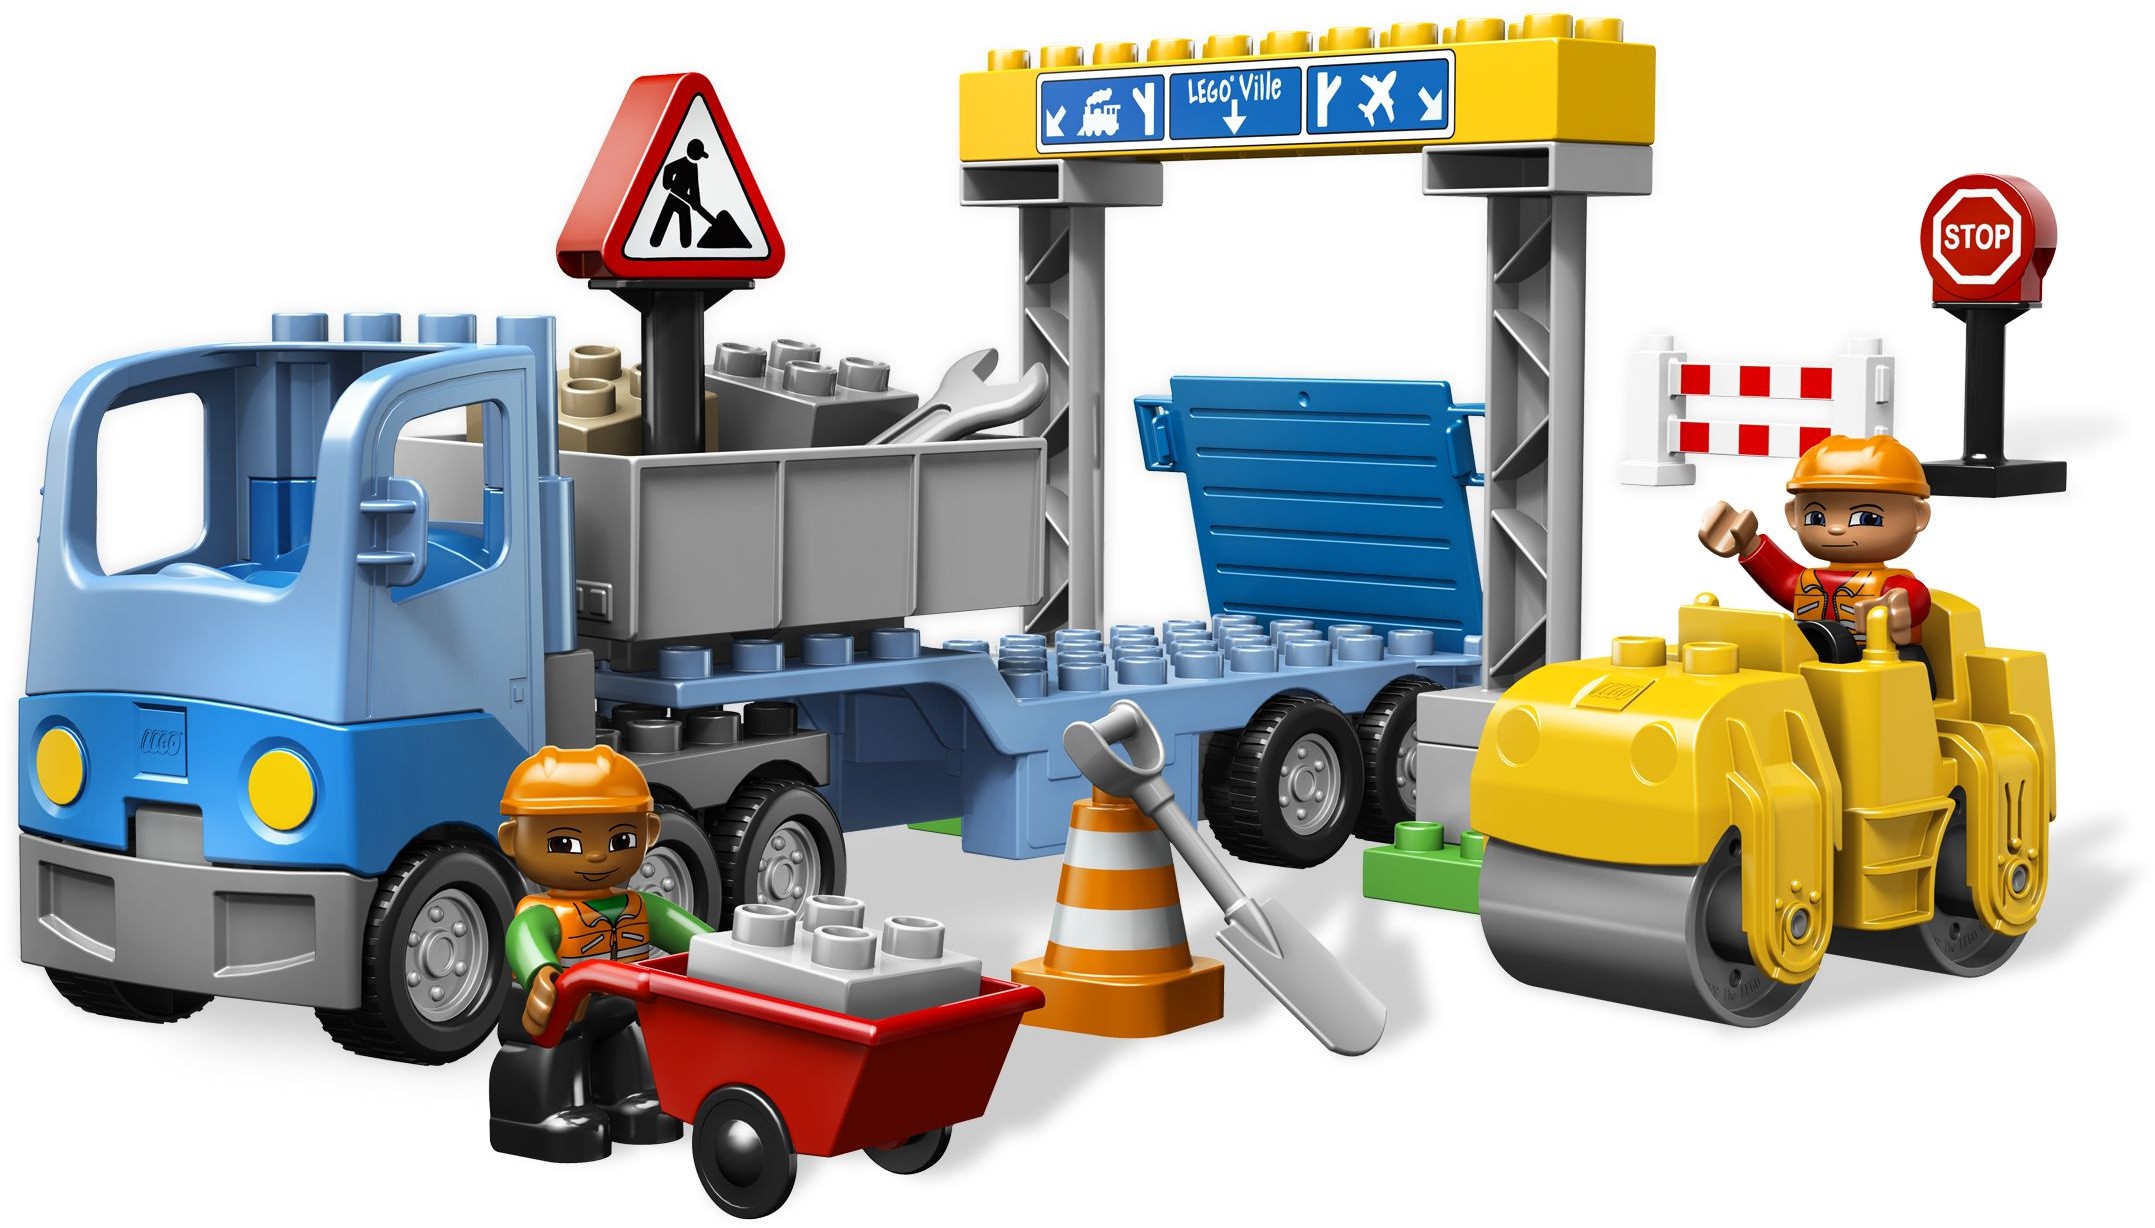 Duplo | Construction LEGO set and database